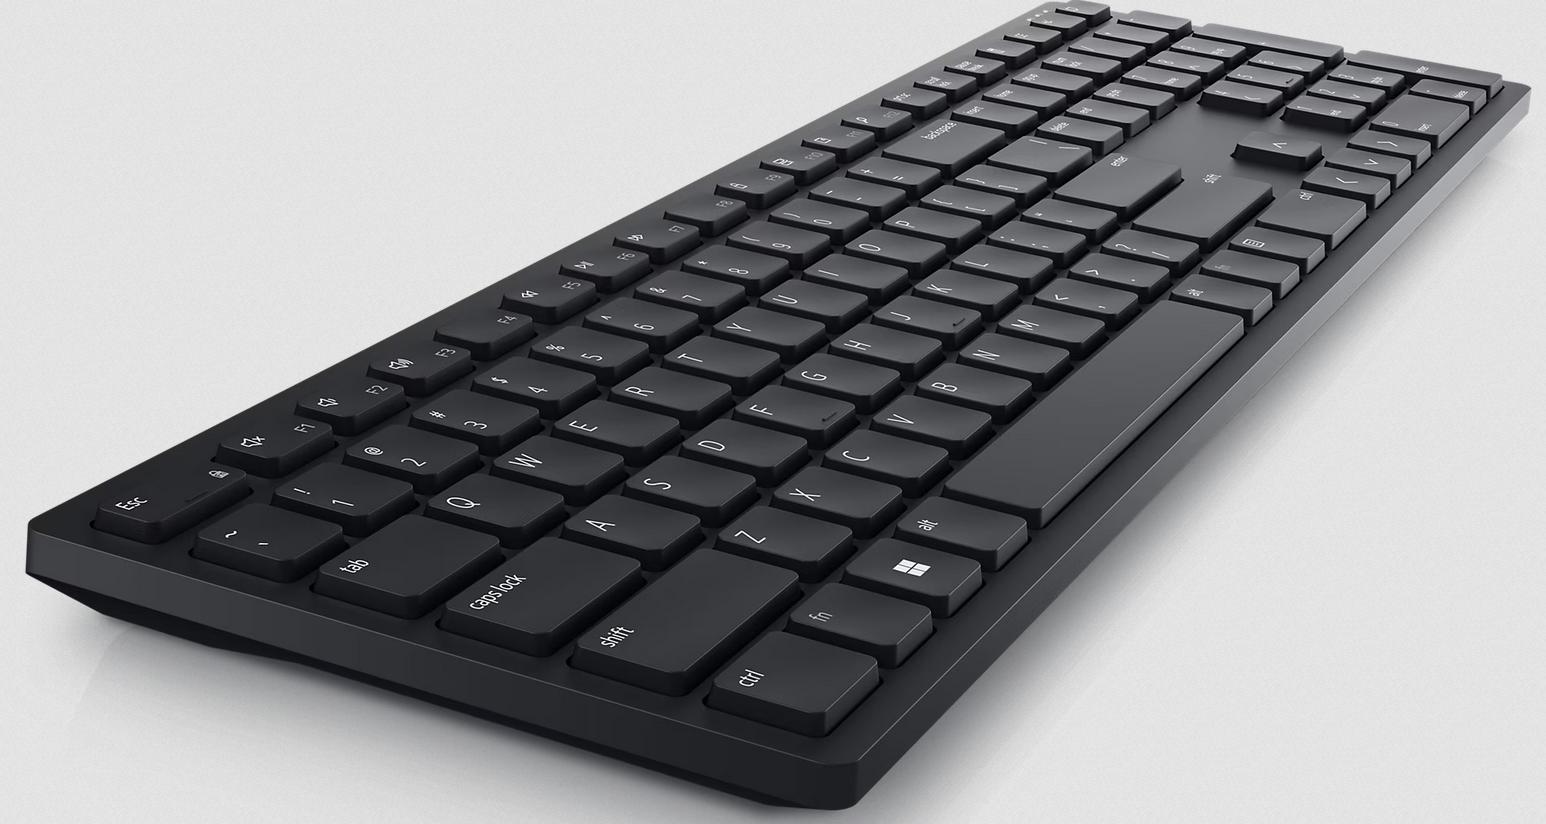 Klawiatura bezprzewodowa Dell KB500 Wireless Keyboard - wybierz trwałość, wybierz bezpieczeństwo